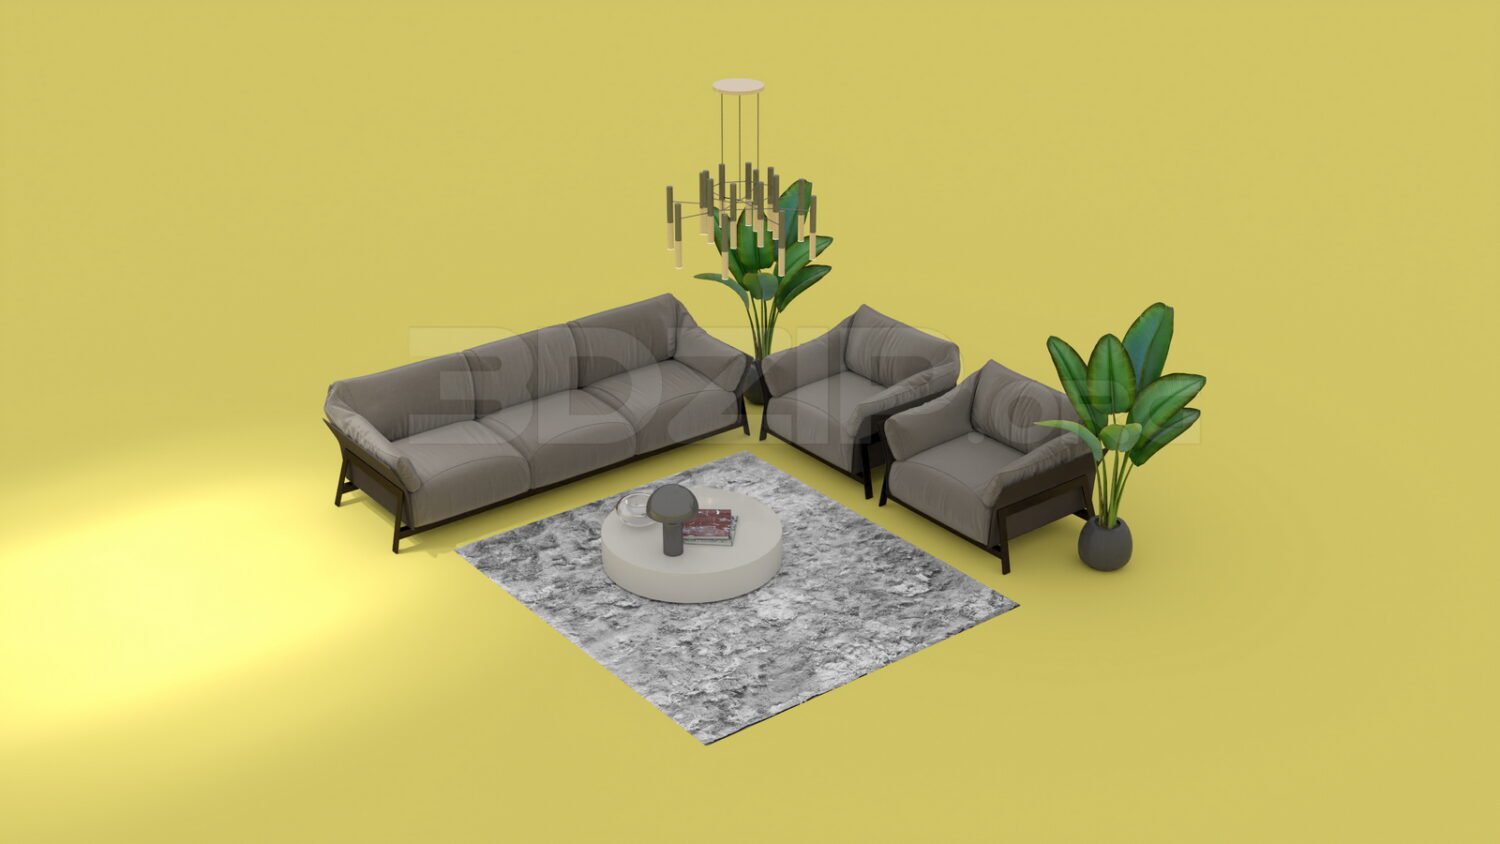 3943. Free 3D Sofa Model Download